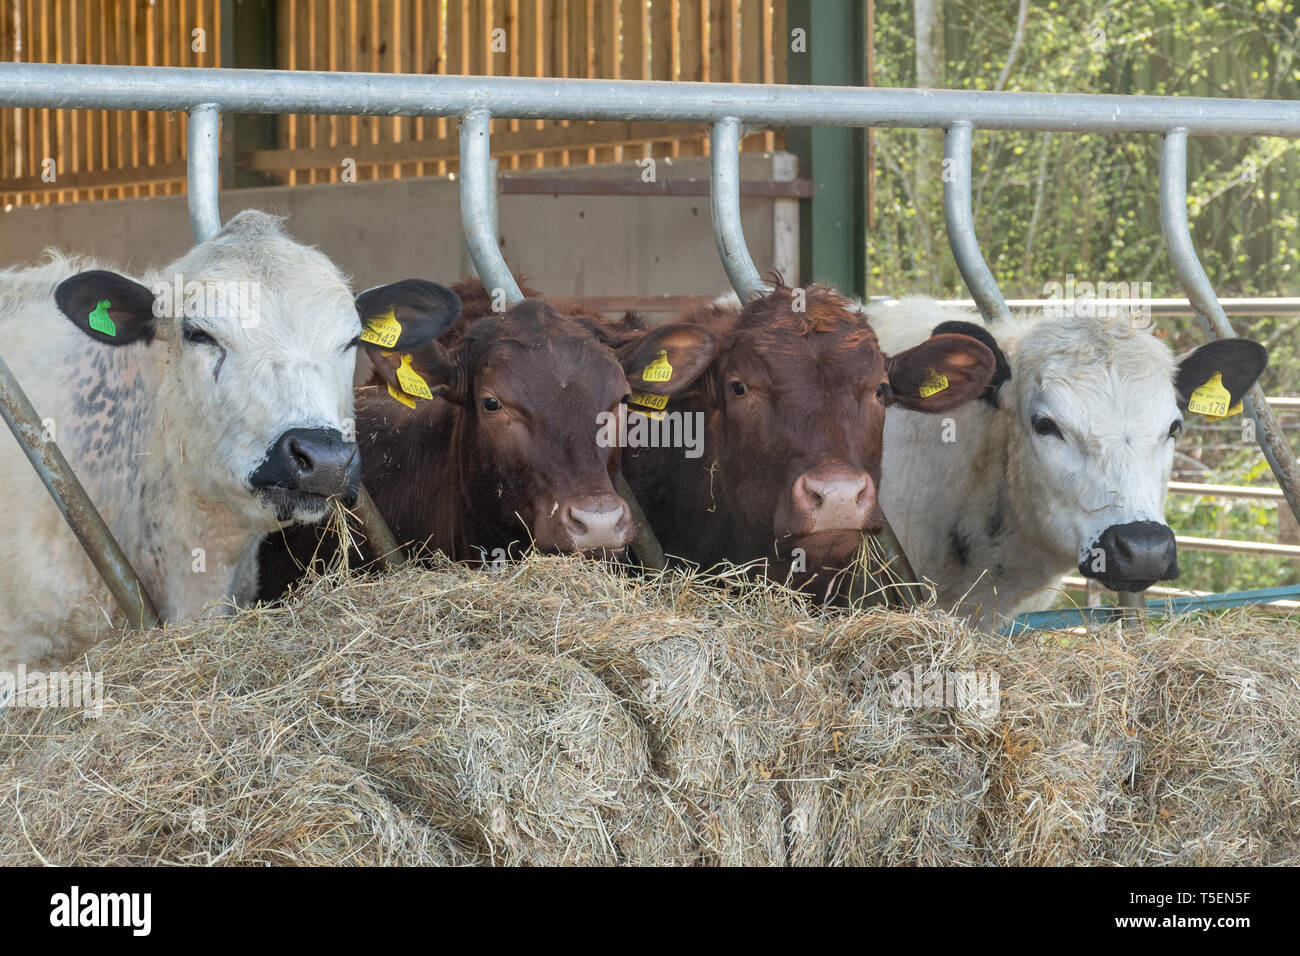 Quatre vaches dans une conduite d'alimentation sur le foin à l'avant Banque D'Images